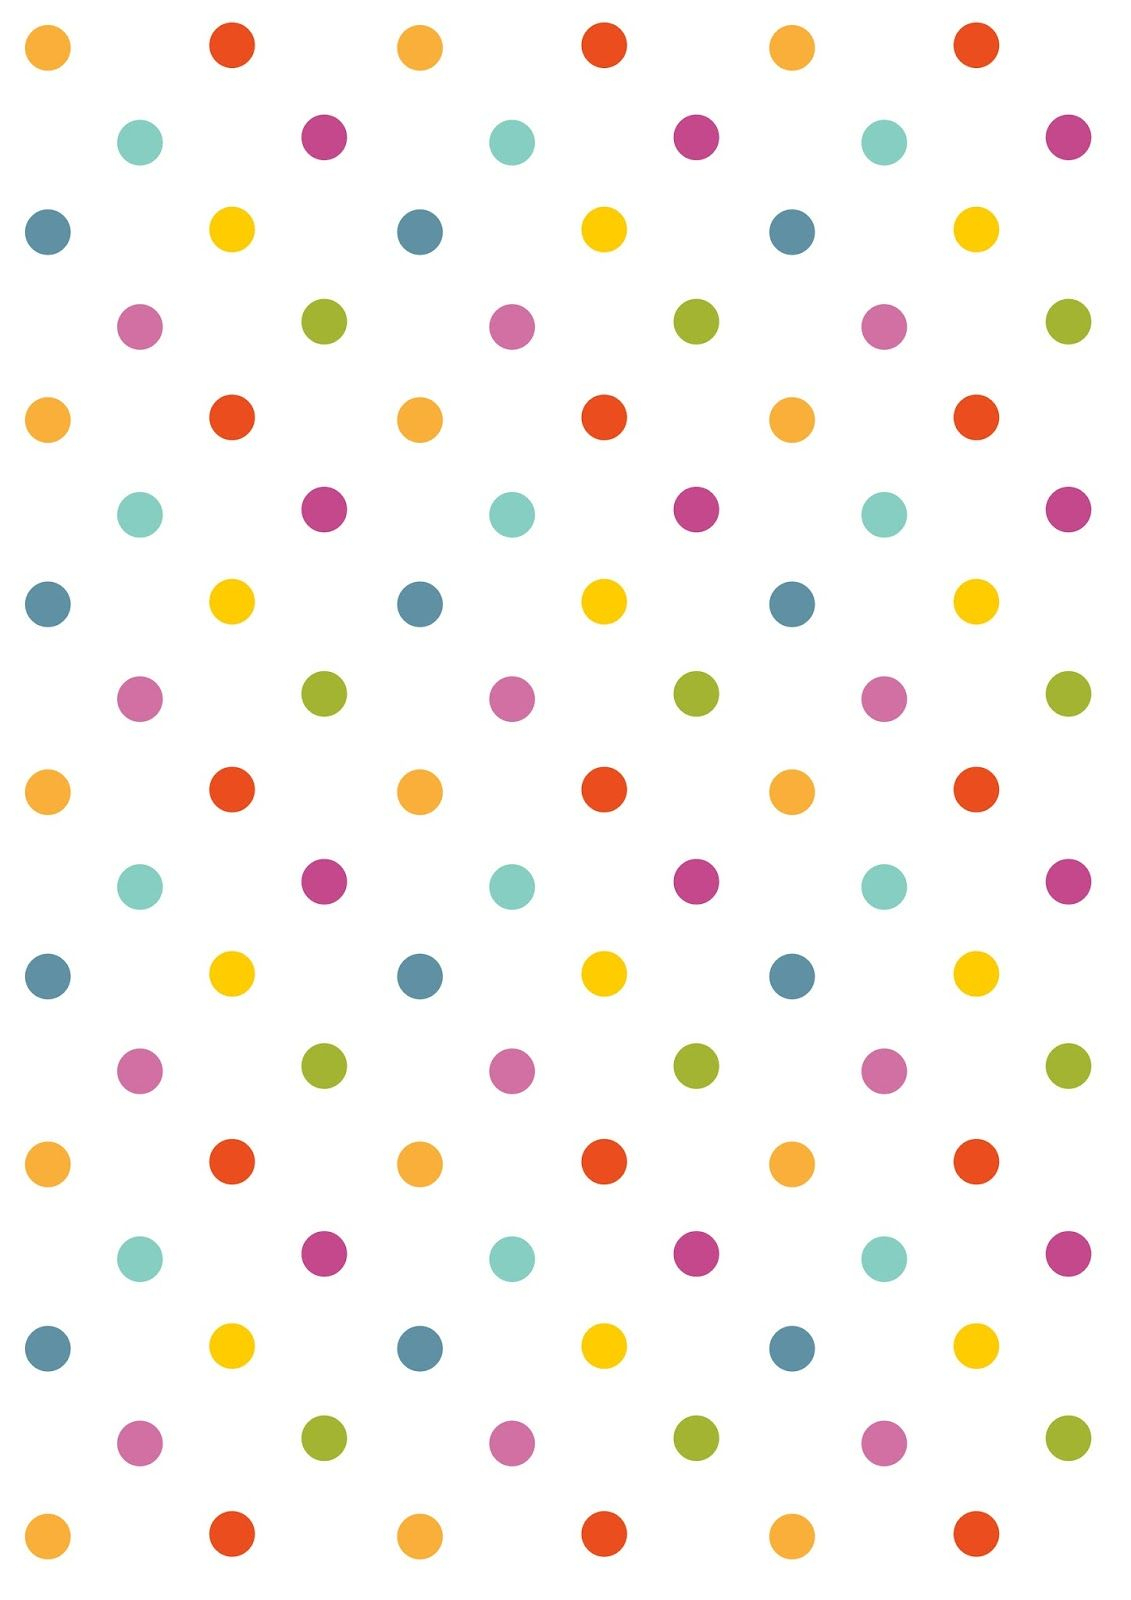 Free Digital Polka Dot Scrapbooking Paper - Ausdruckbares - Free Printable Wallpaper Patterns